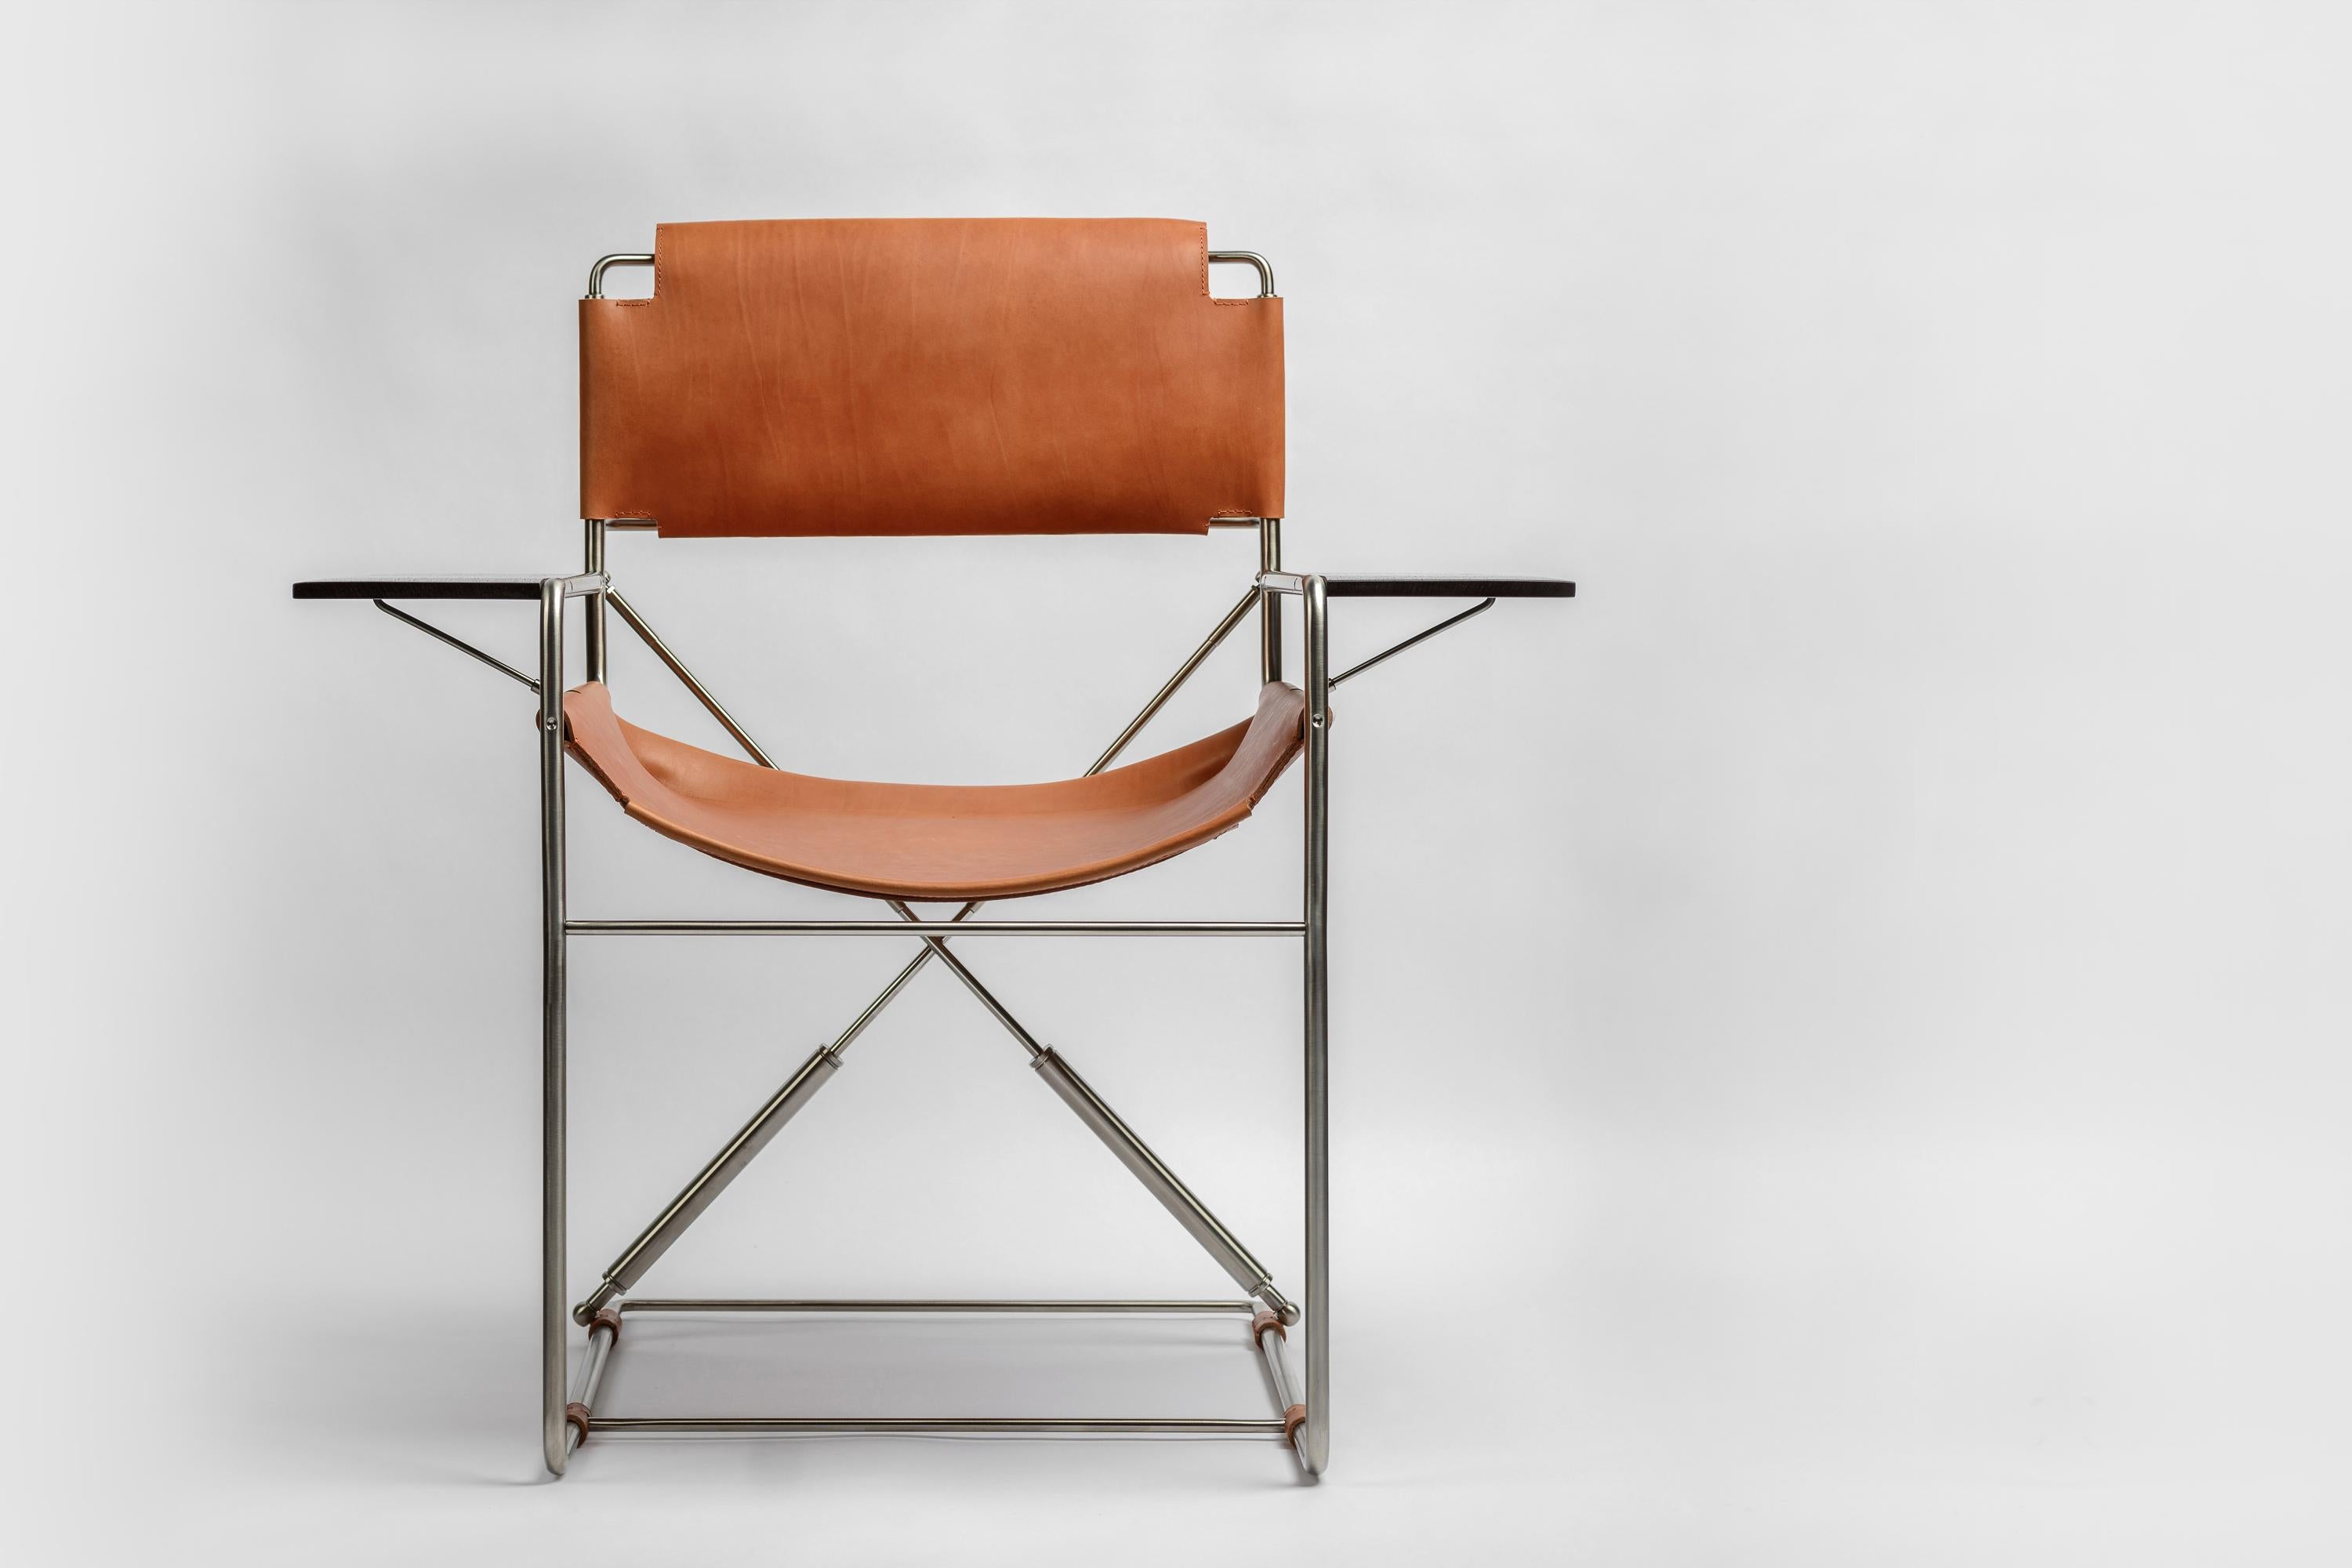 Offrez-vous un confort et un style inégalés avec ce rocking-chair exceptionnel, inspiré des principes de conception intemporels du Bauhaus. Le design épuré et fonctionnel de la chaise en fait une pièce à part. Grâce à ses ressorts pneumatiques